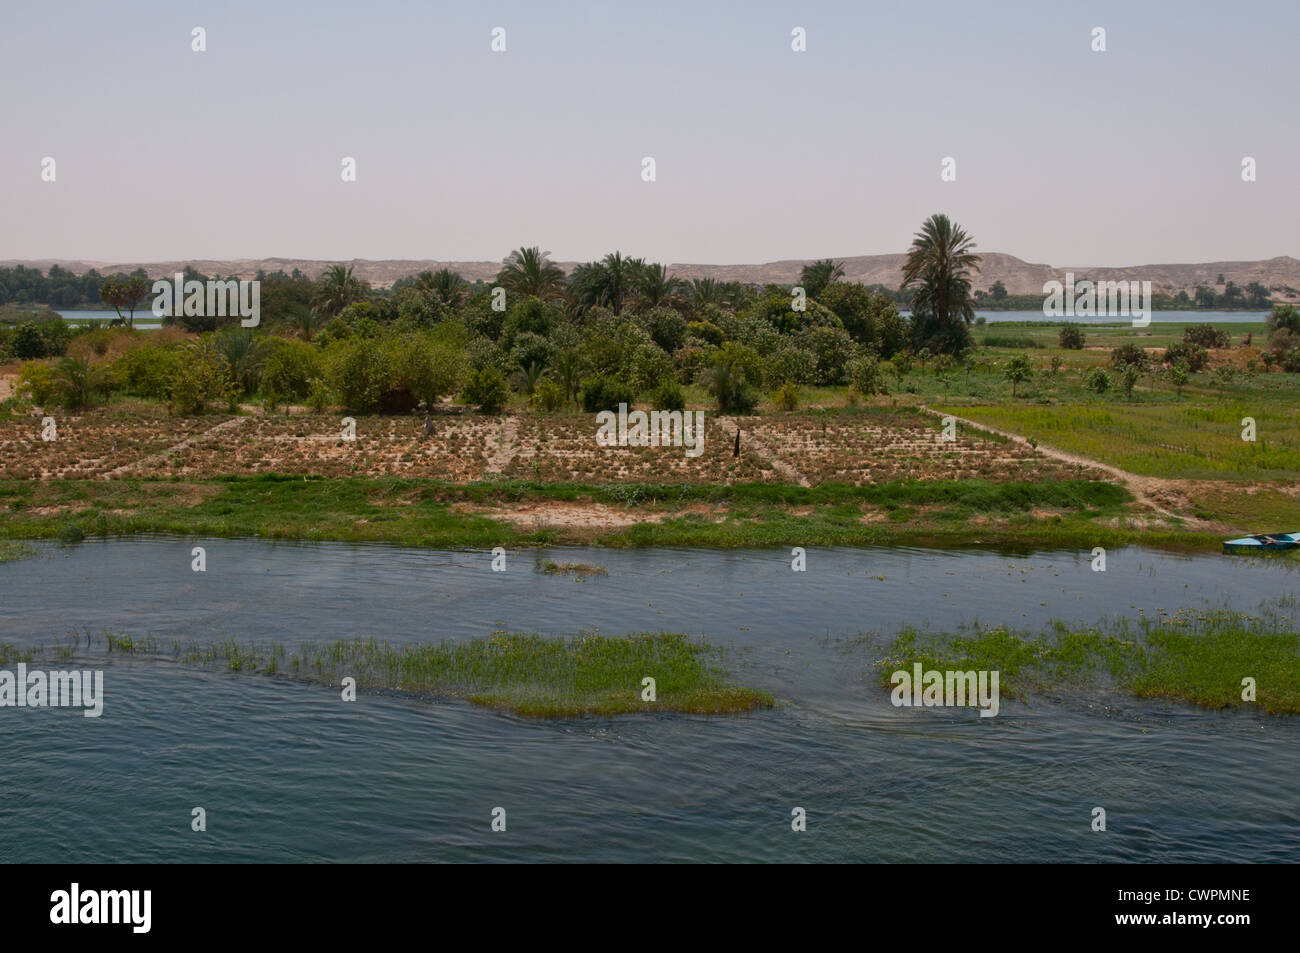 Les terres agricoles le long du Nil, entre Louxor et Assouan en Egypte Banque D'Images